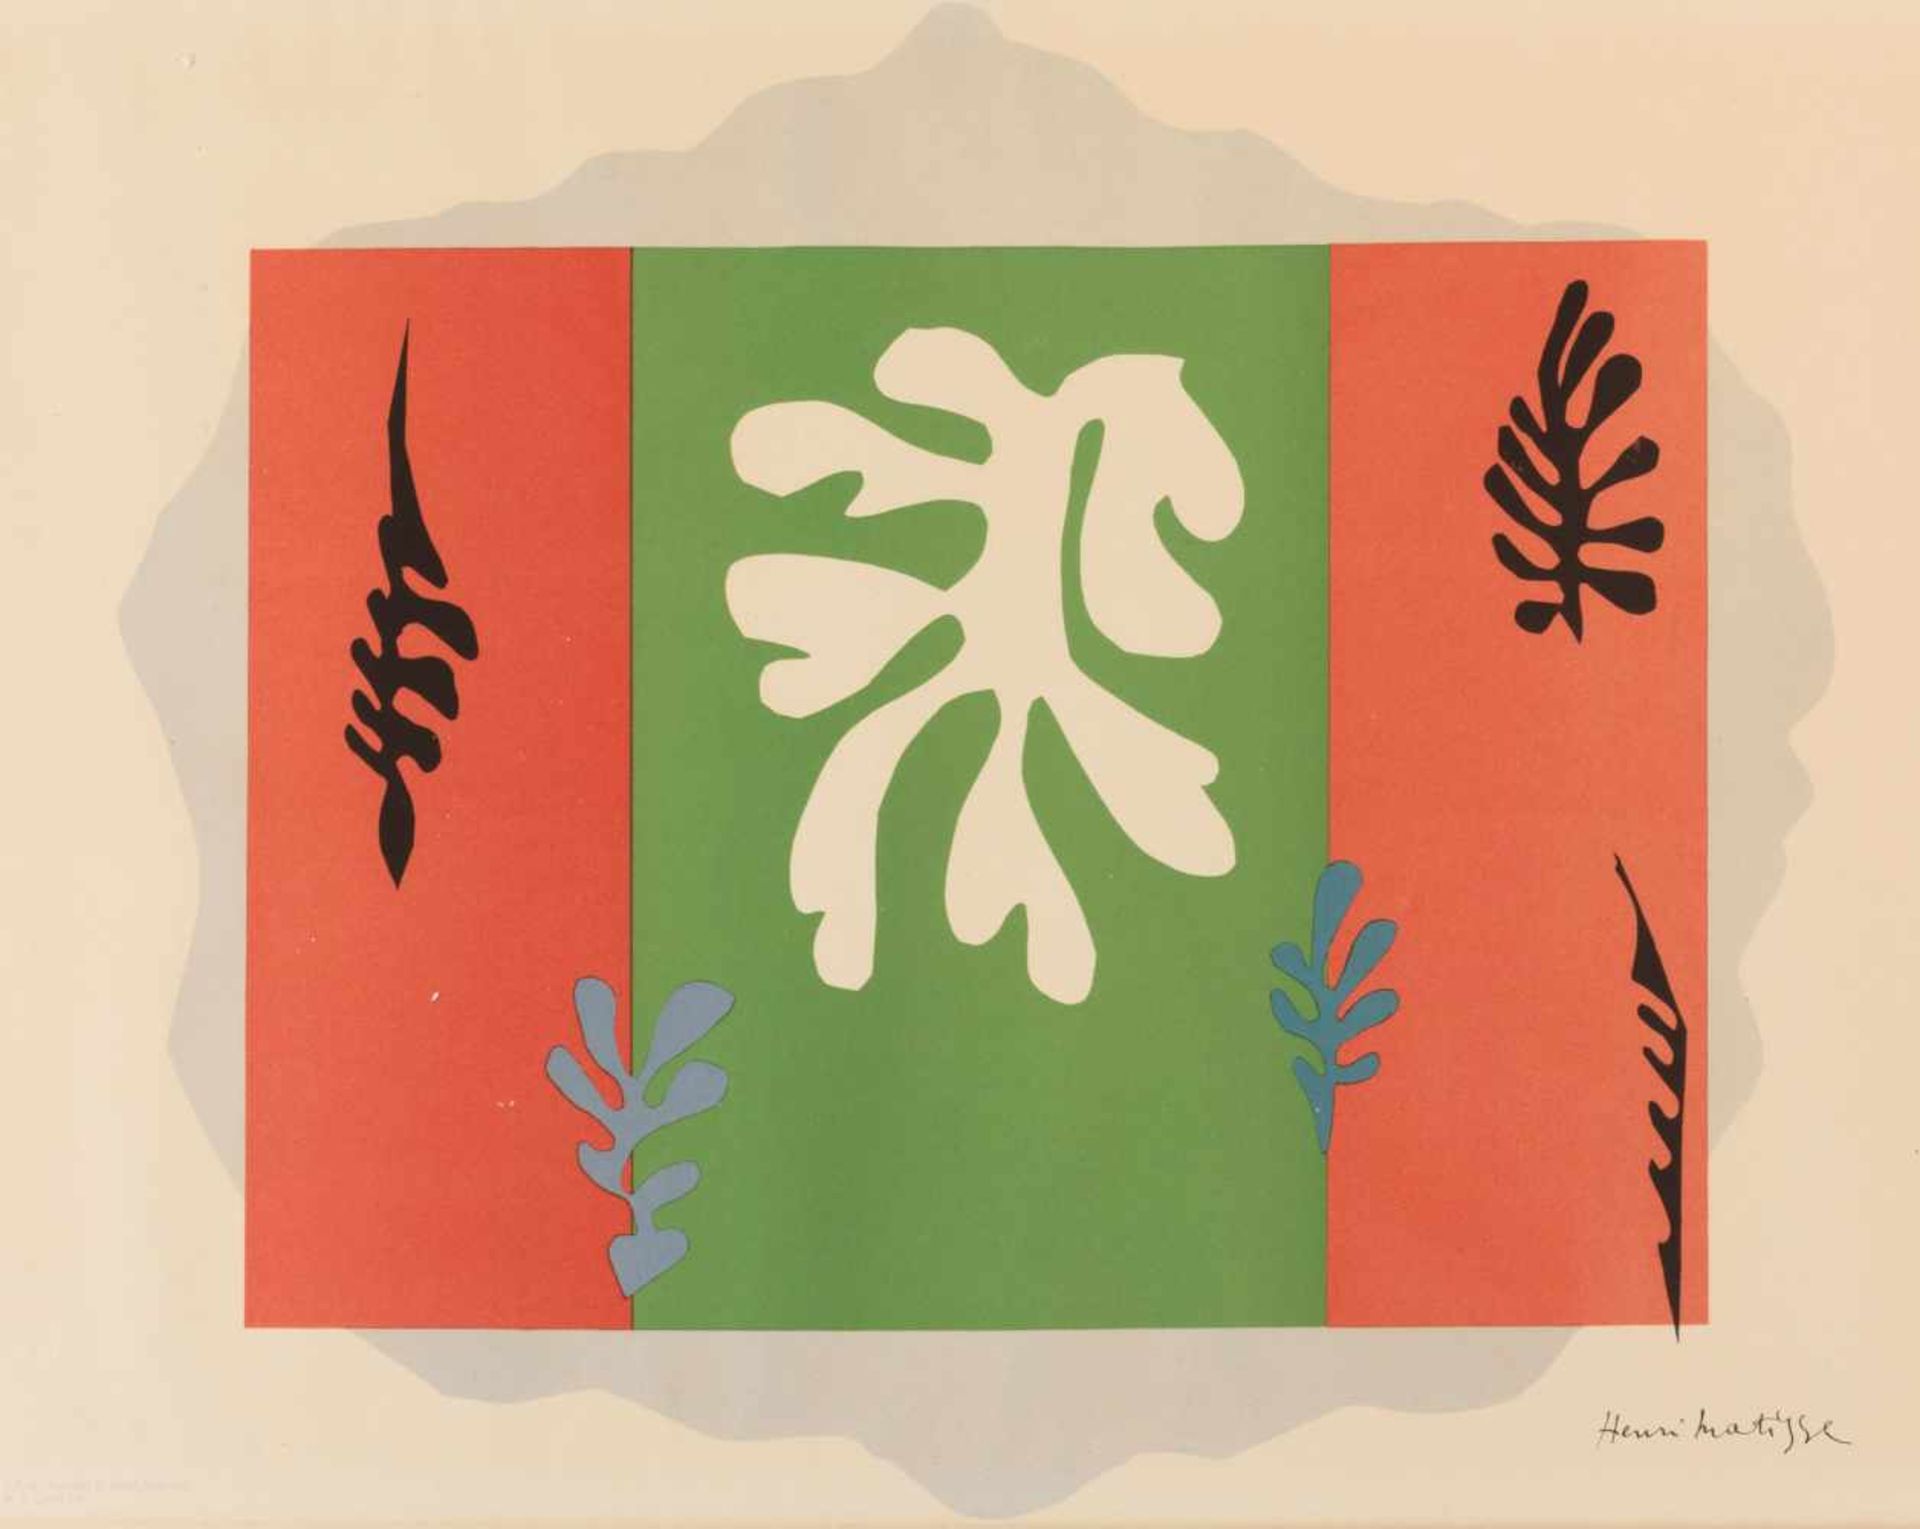 Henri Matisse (Le Cateau-Cambrésis 1869 - 1954 Nizza) 'The Dancer' aus 'Schools Prints European